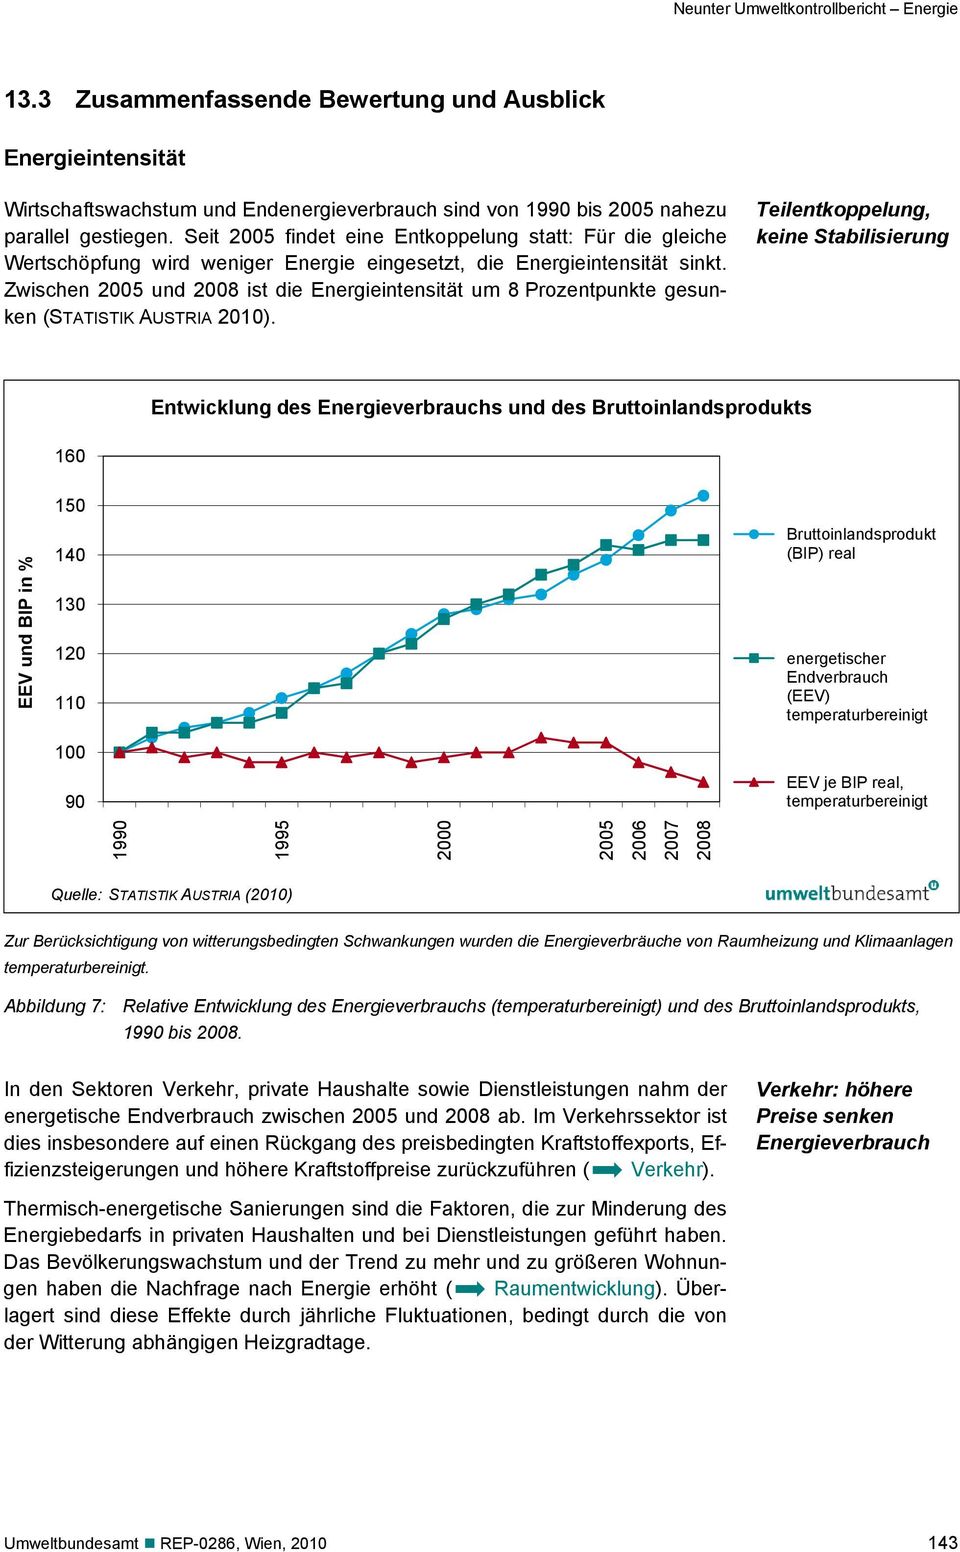 Zwischen 2005 und 2008 ist die Energieintensität um 8 Prozentpunkte gesunken (STATISTIK AUSTRIA 2010).